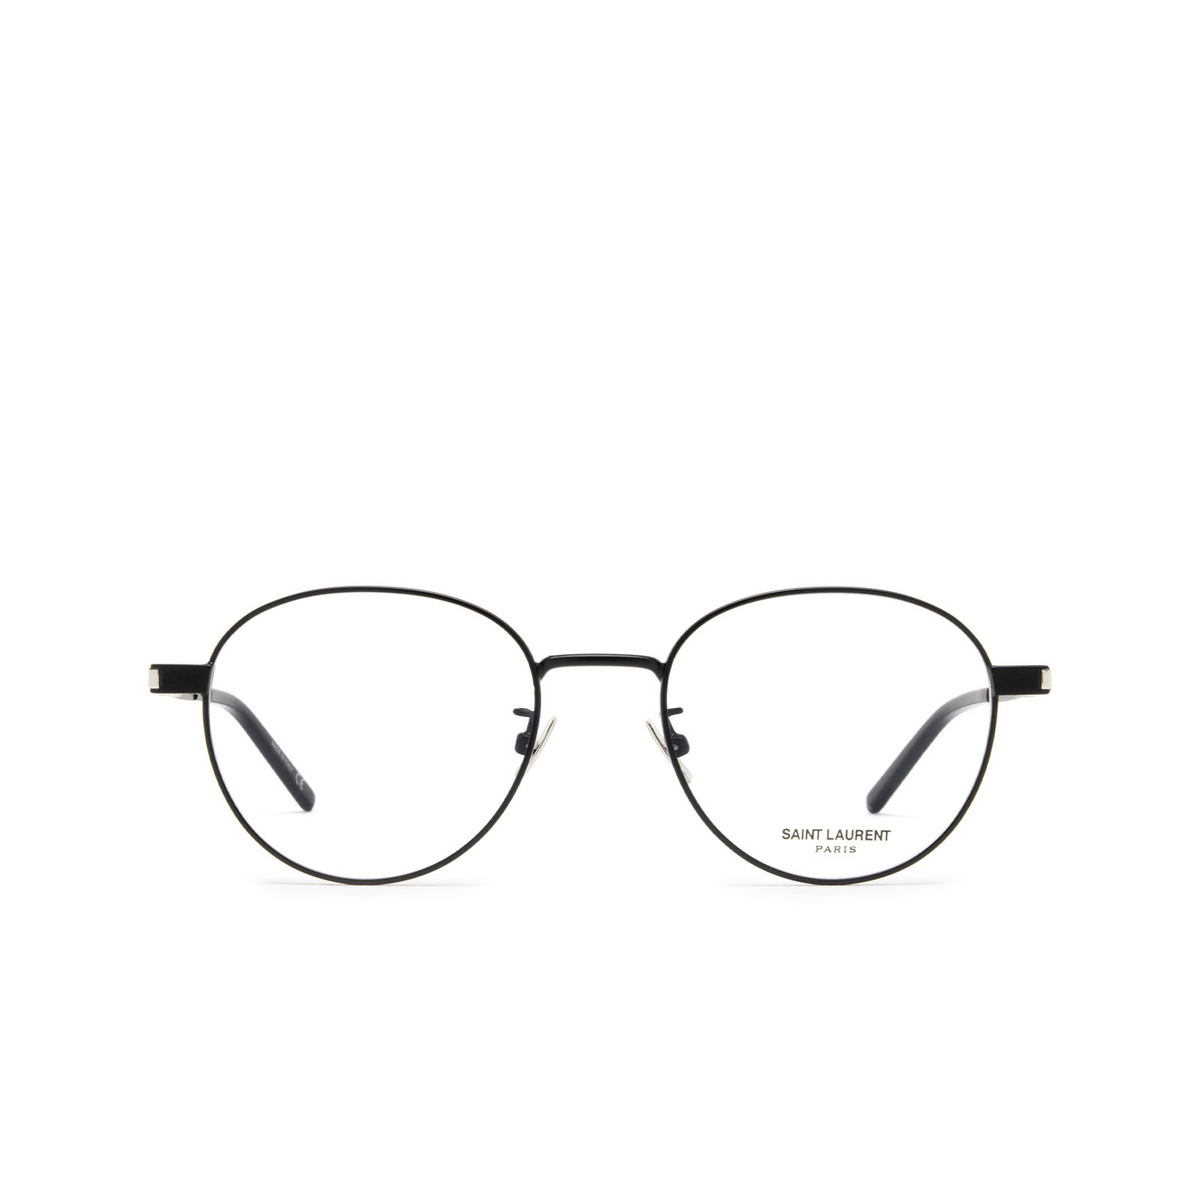 Saint Laurent® Round Eyeglasses: SL 532 color Black 001 - front view.